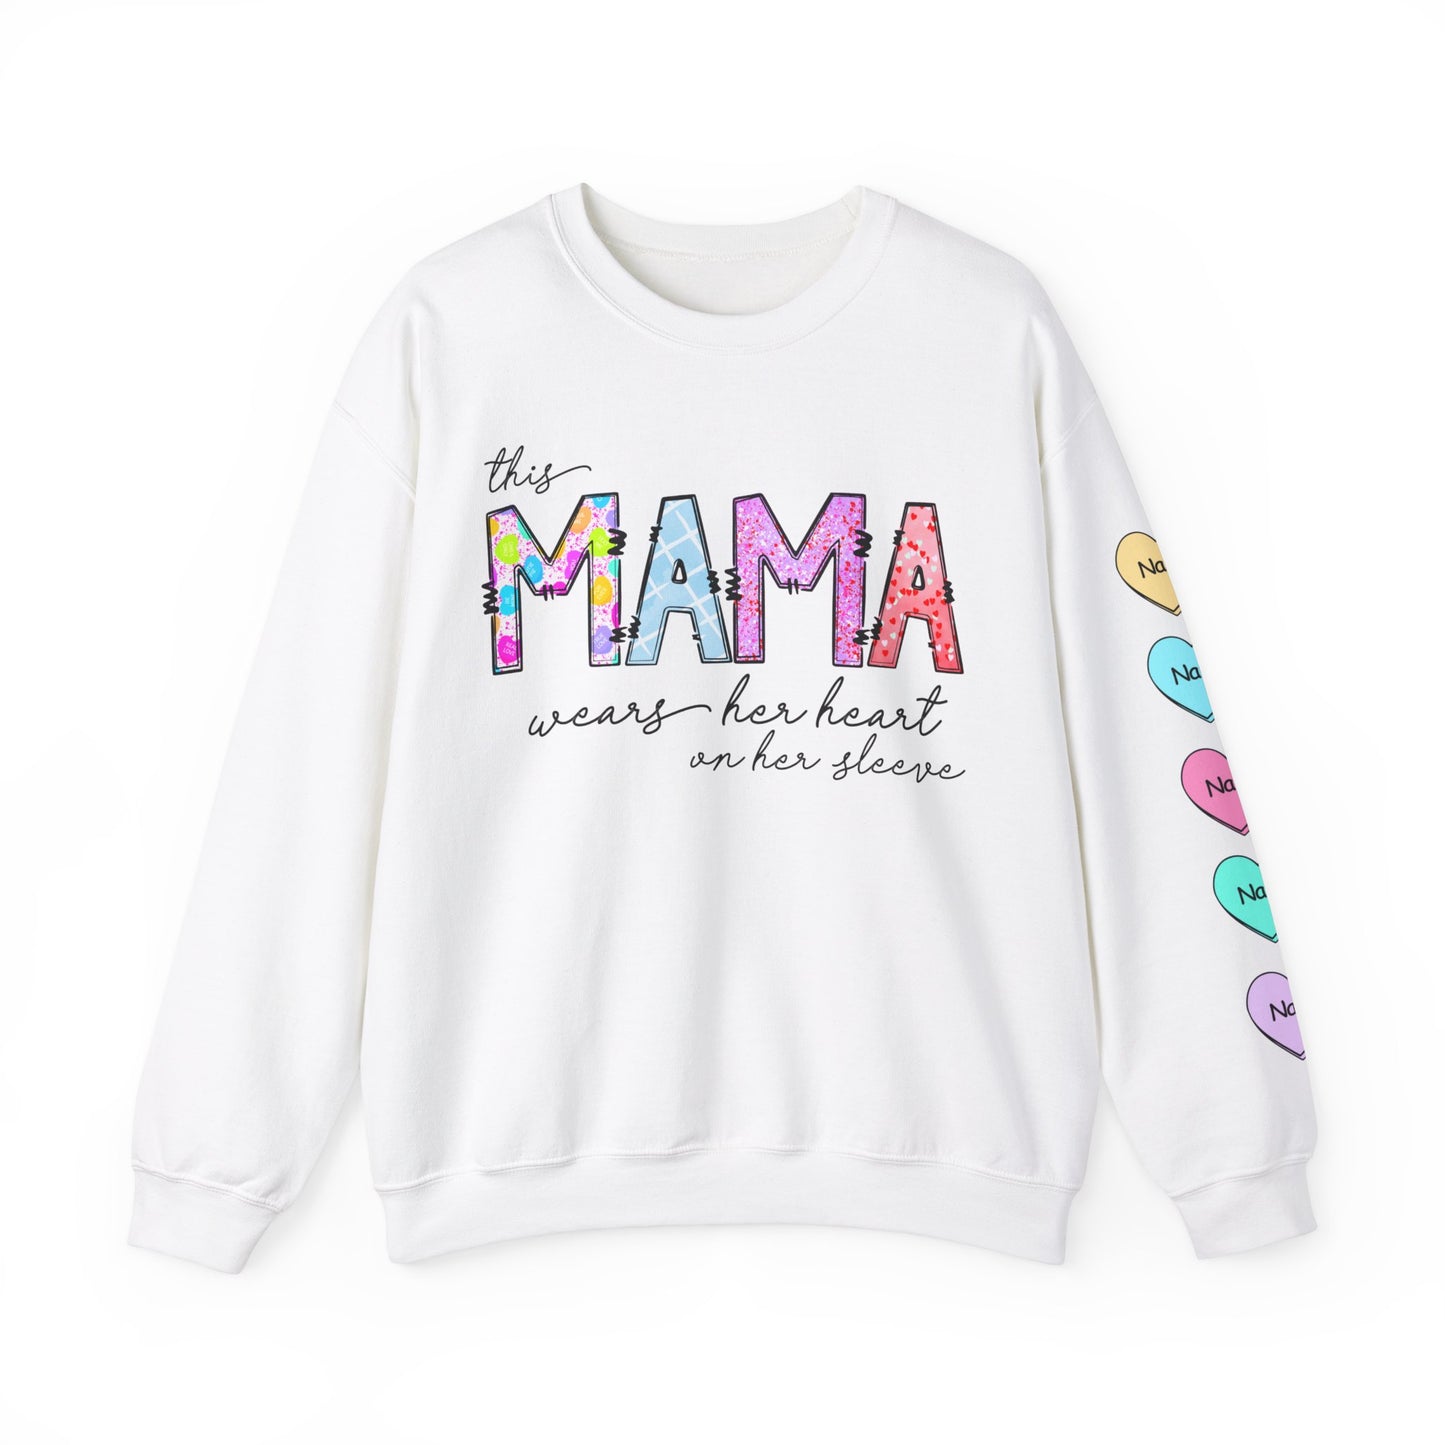 Heart On Sleeve Sweatshirt - Mama